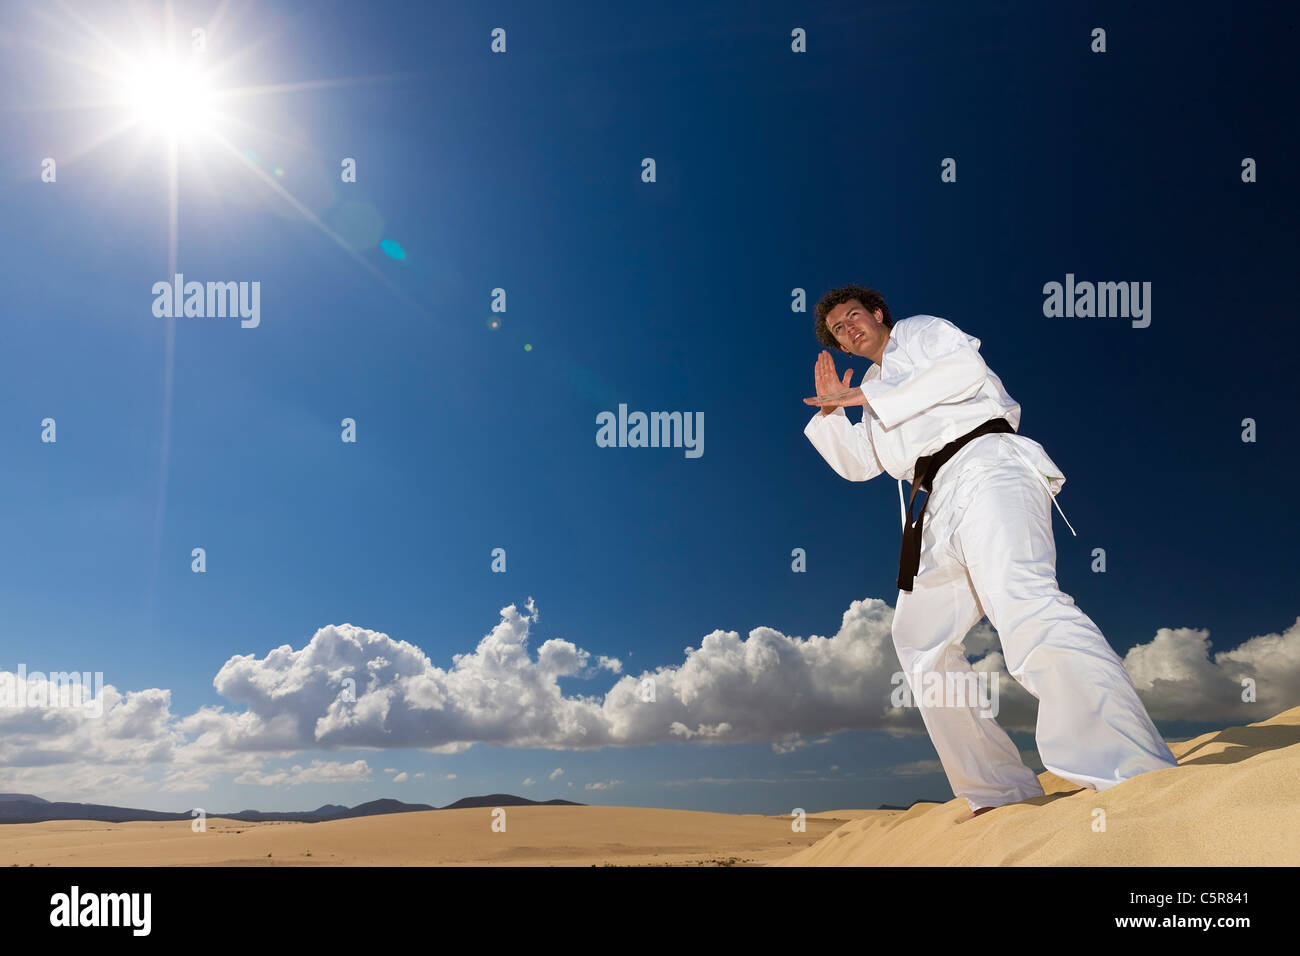 Black belt martial artist training on desert dunes. Stock Photo